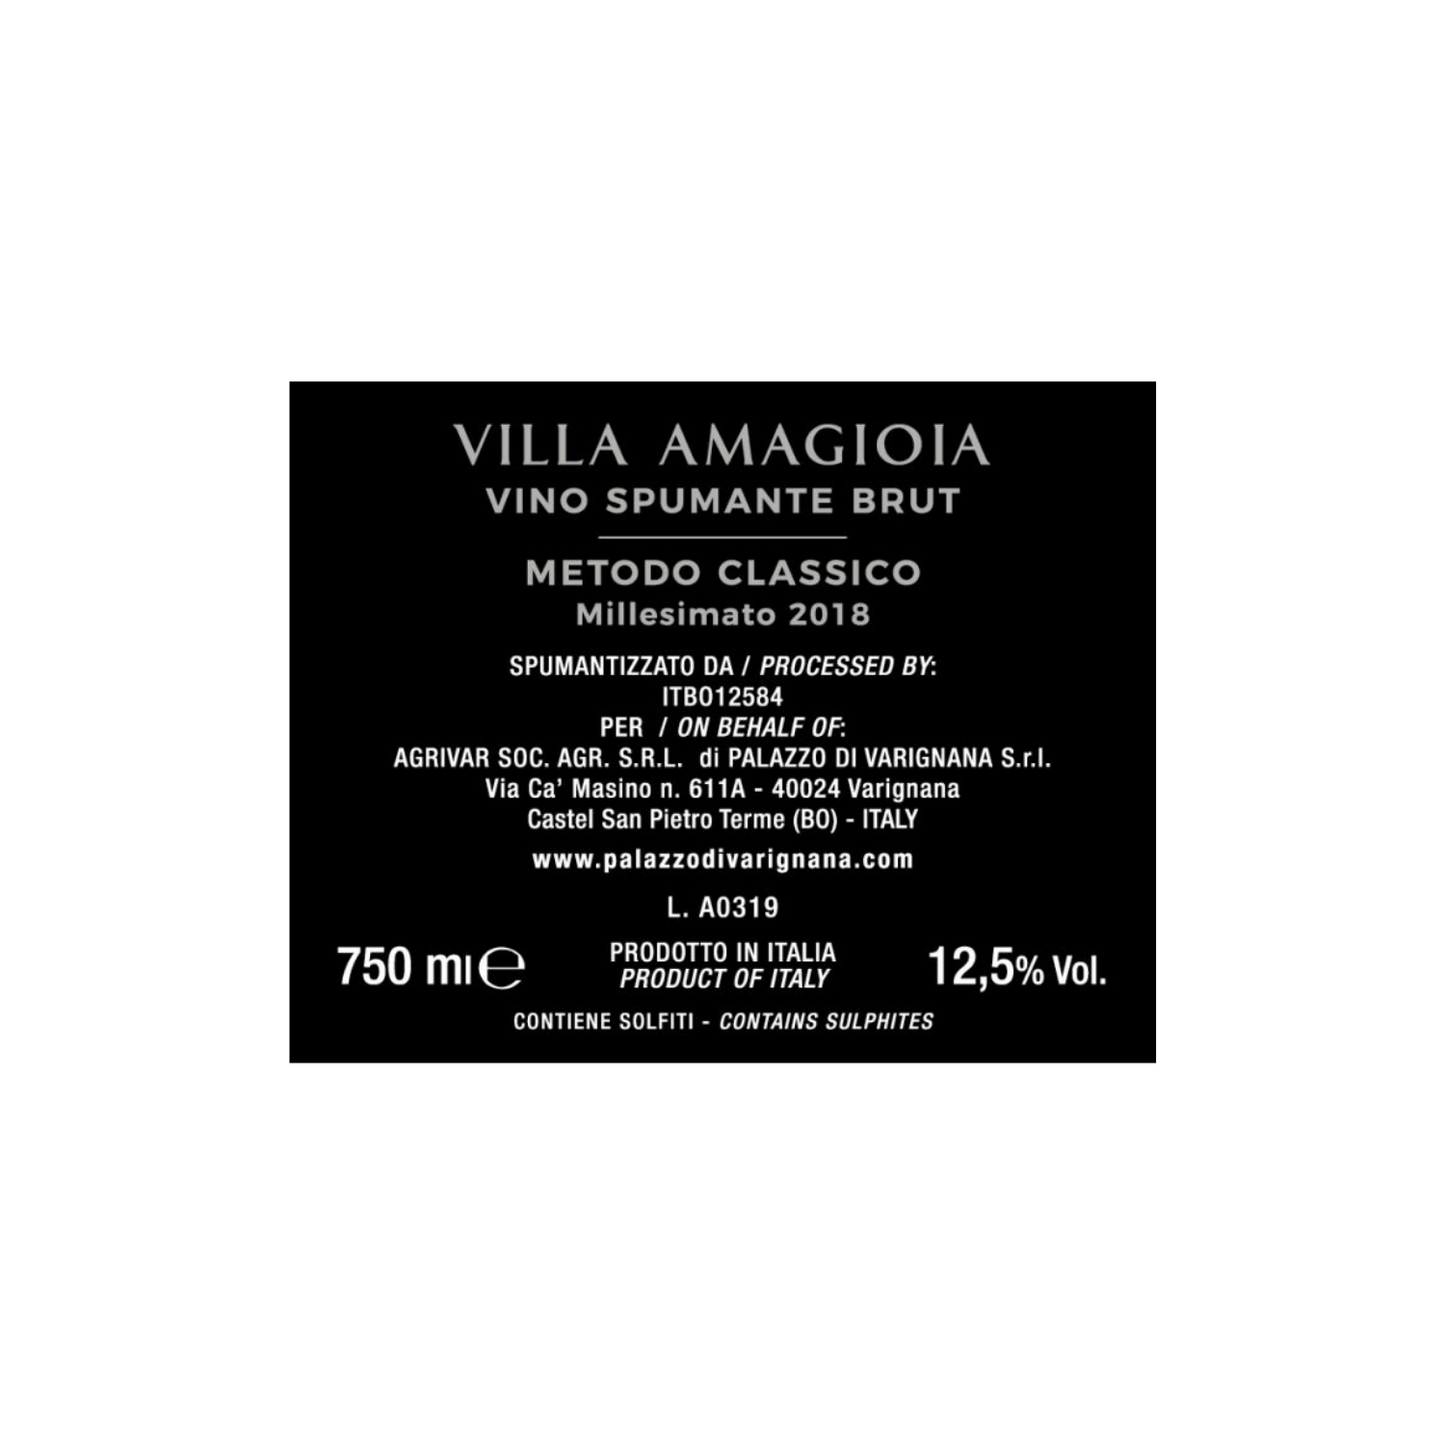 Villa Amagioia Metodo Classico Brut - GIFT BOX - 750ml